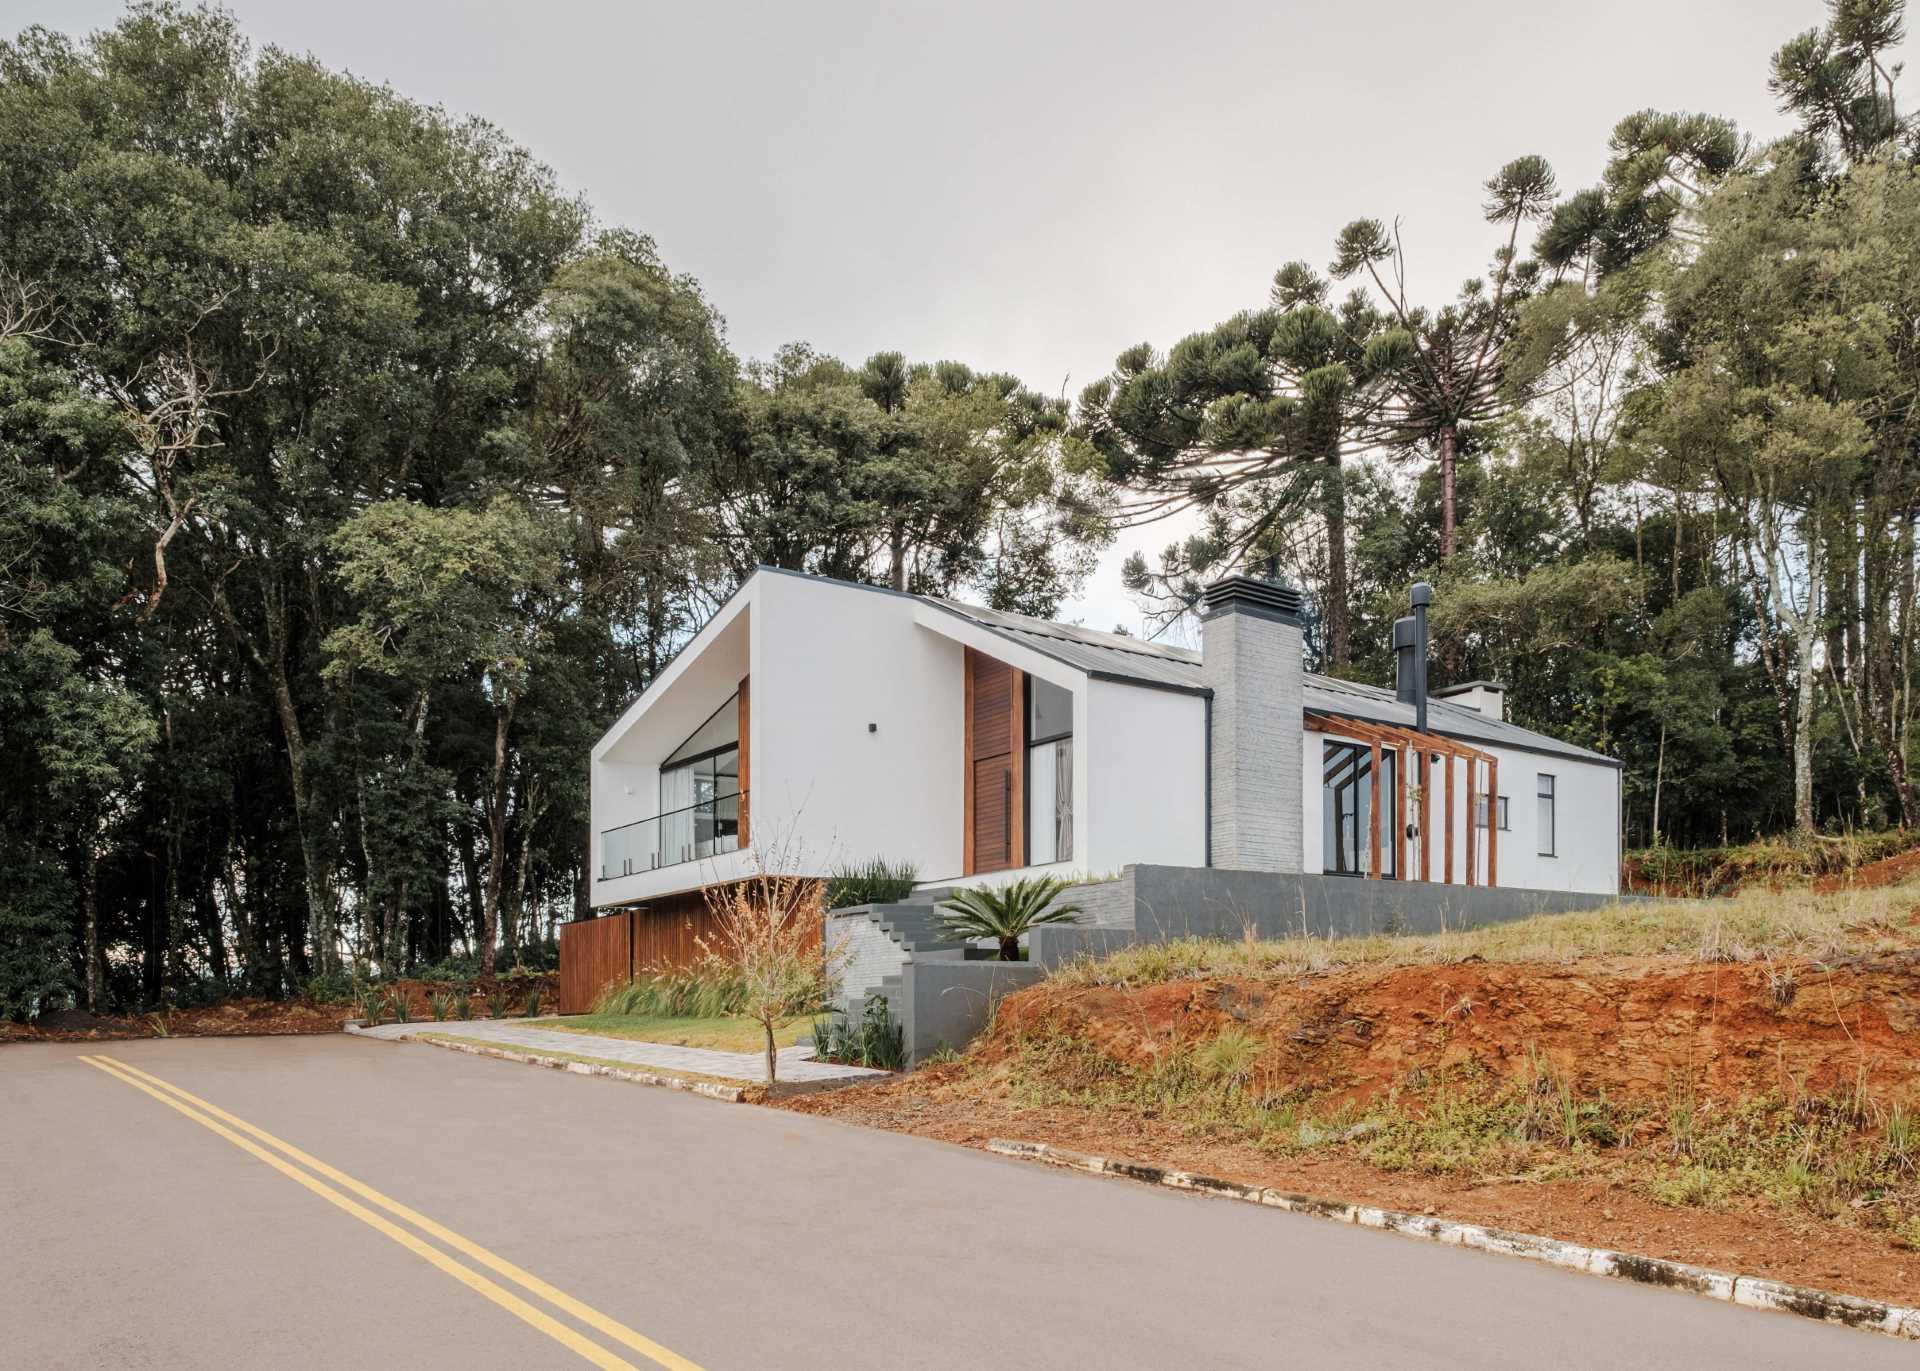 Дизайн этого современного дома демонстрирует современную интерпретацию архетипа остроконечной крыши.